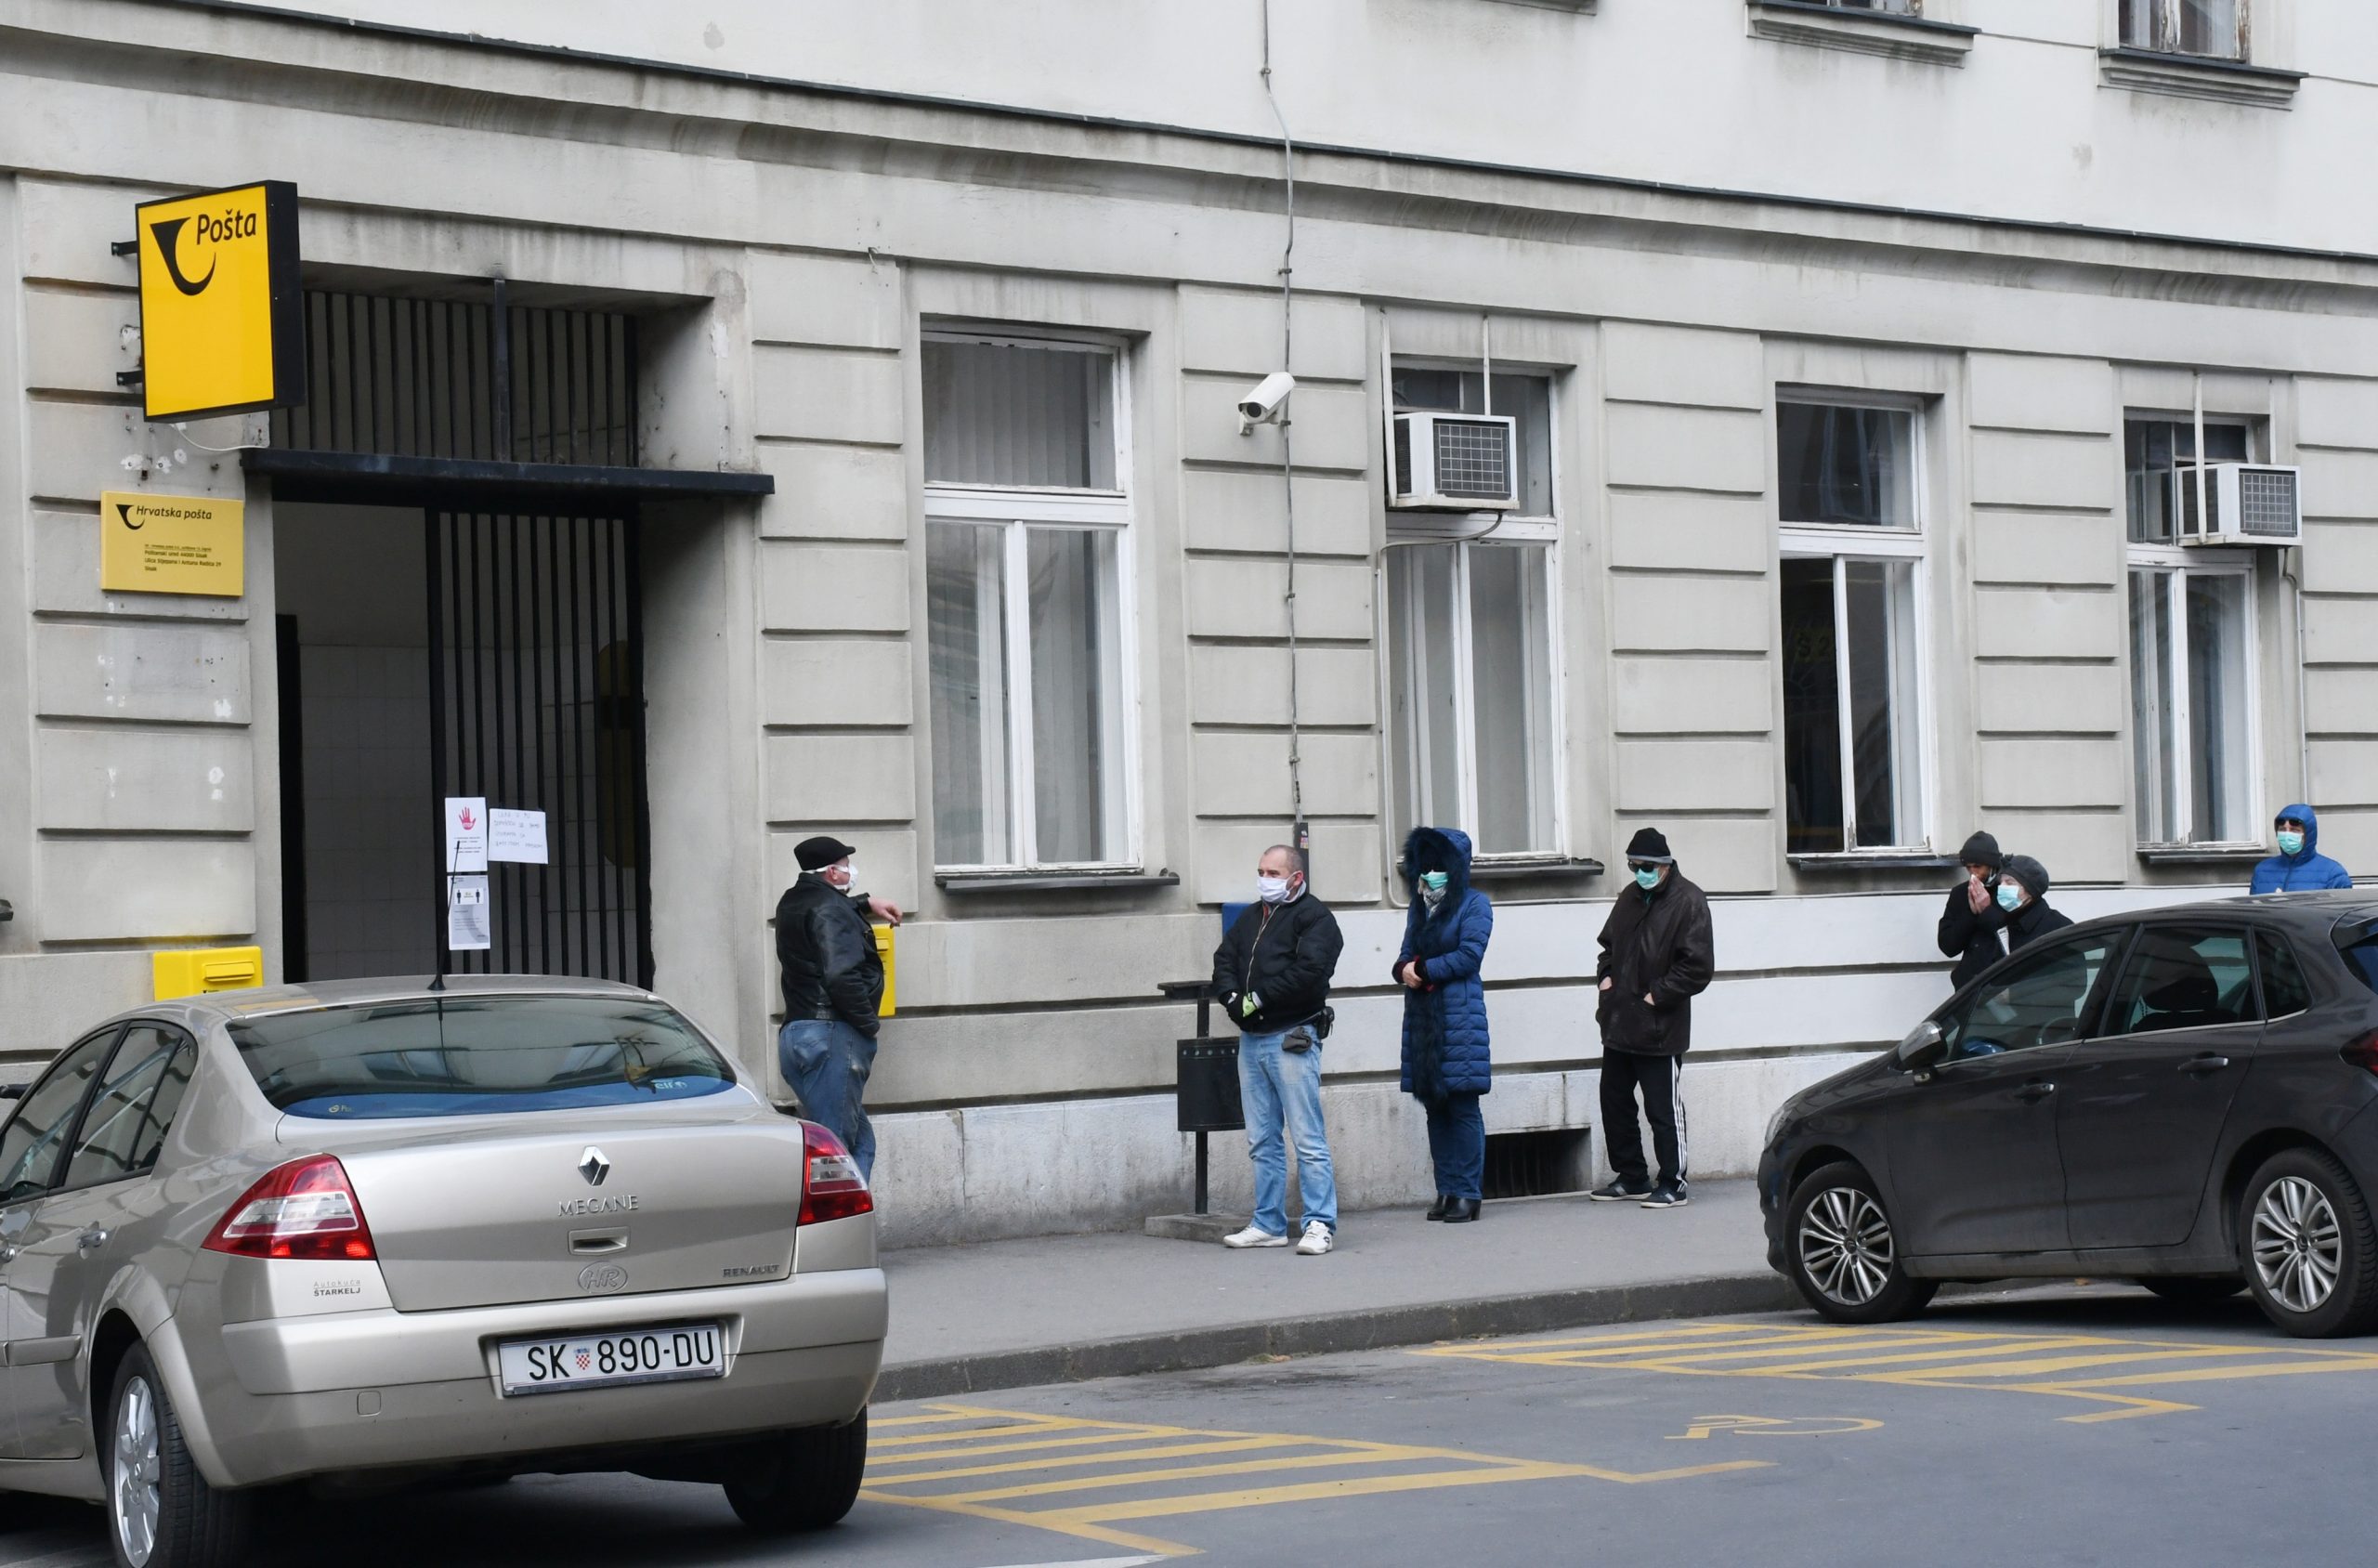 23.03.2020., Sisak - Siscani se pridrzavaju vecine sigurnosnih mjera za ulazak u Postu, no jedino se neki ne pridrzavaju propisanog razmaka. 
Photo: Nikola Cutuk/PIXSELL